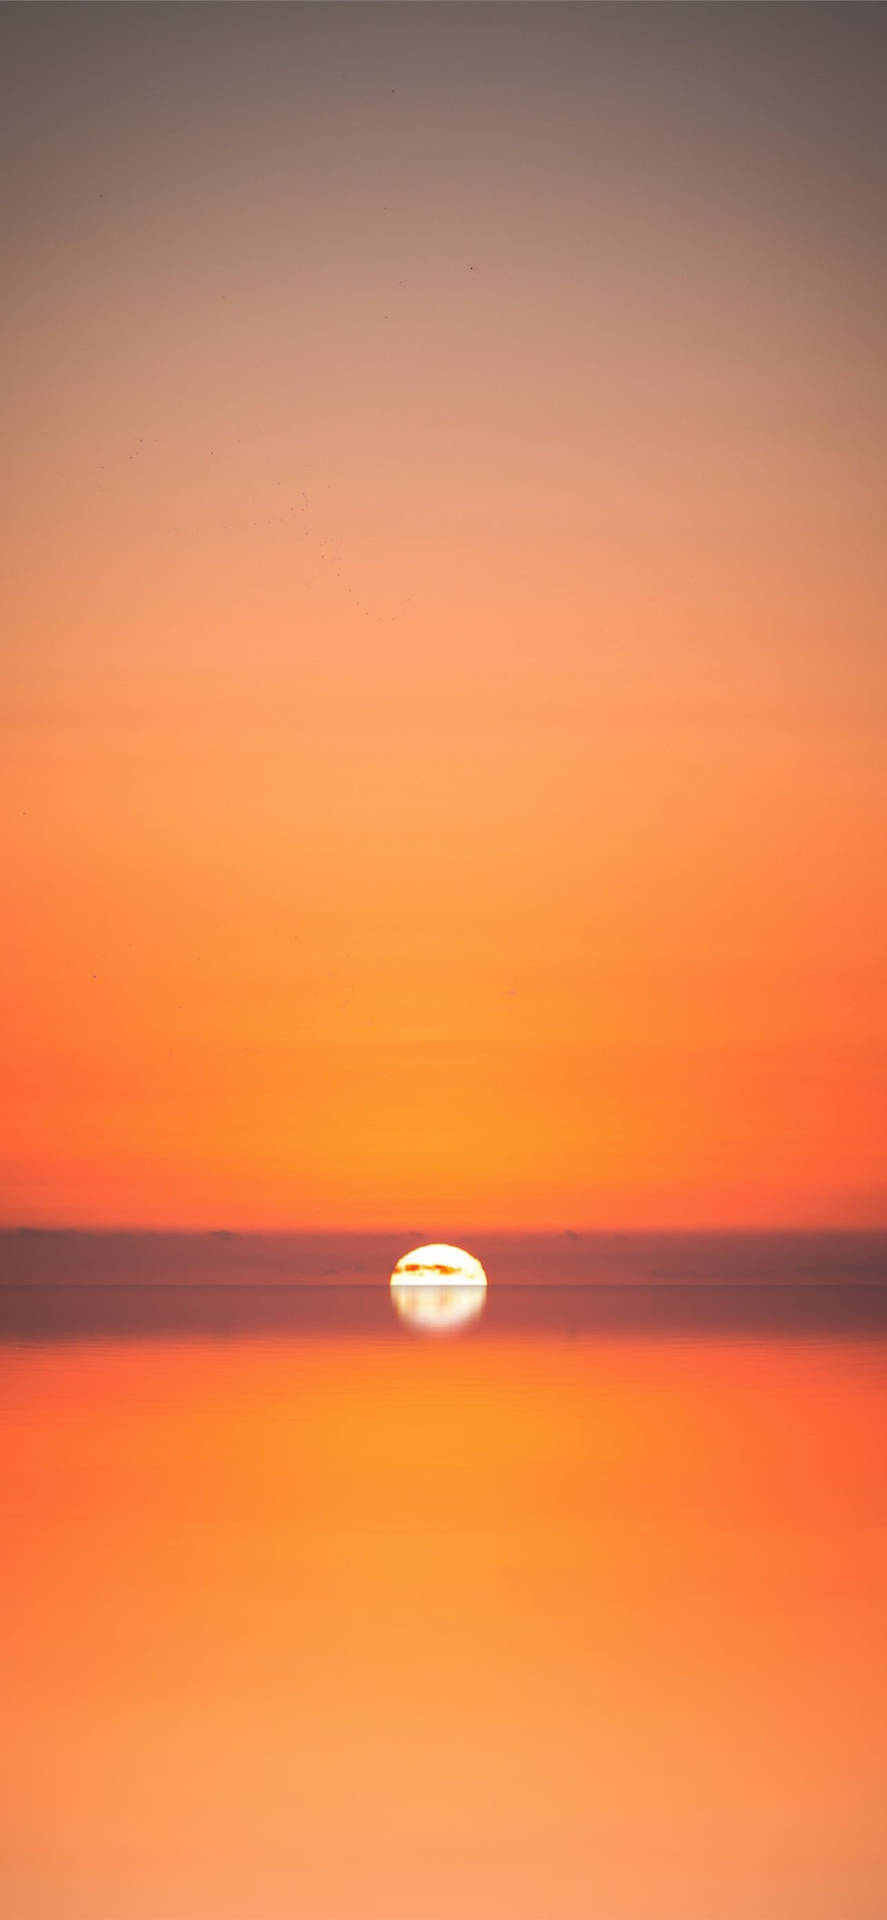 Interesting Sunset Beach Iphone Wallpaper